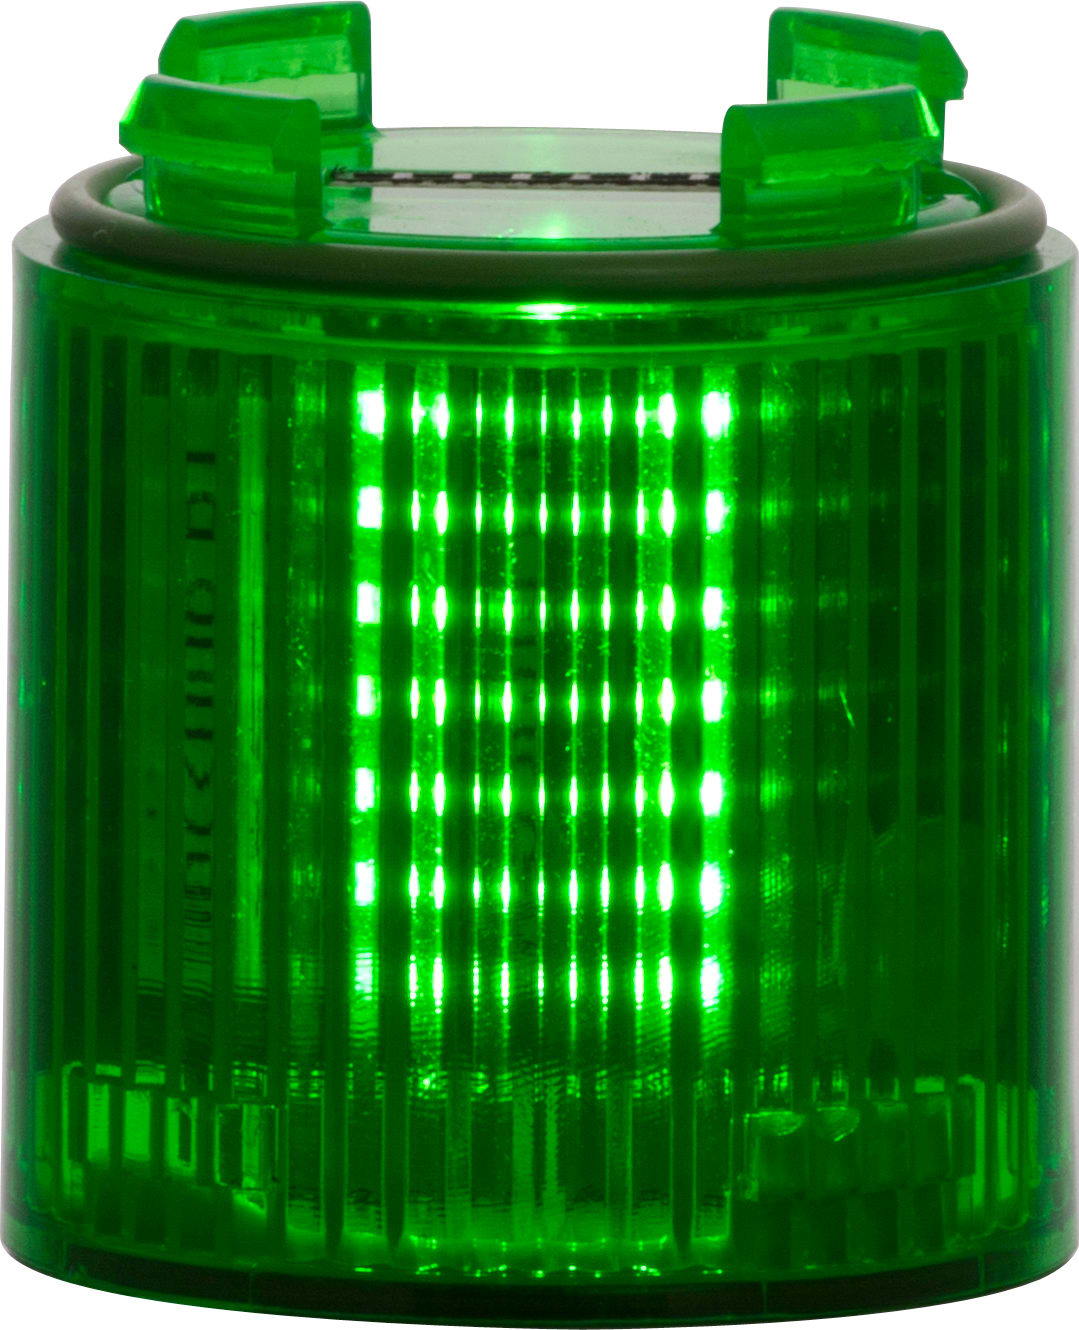 SIRENA - BABYTWS : élément lumineux vert - lumière fixe - lentille colorée - V24ACDC